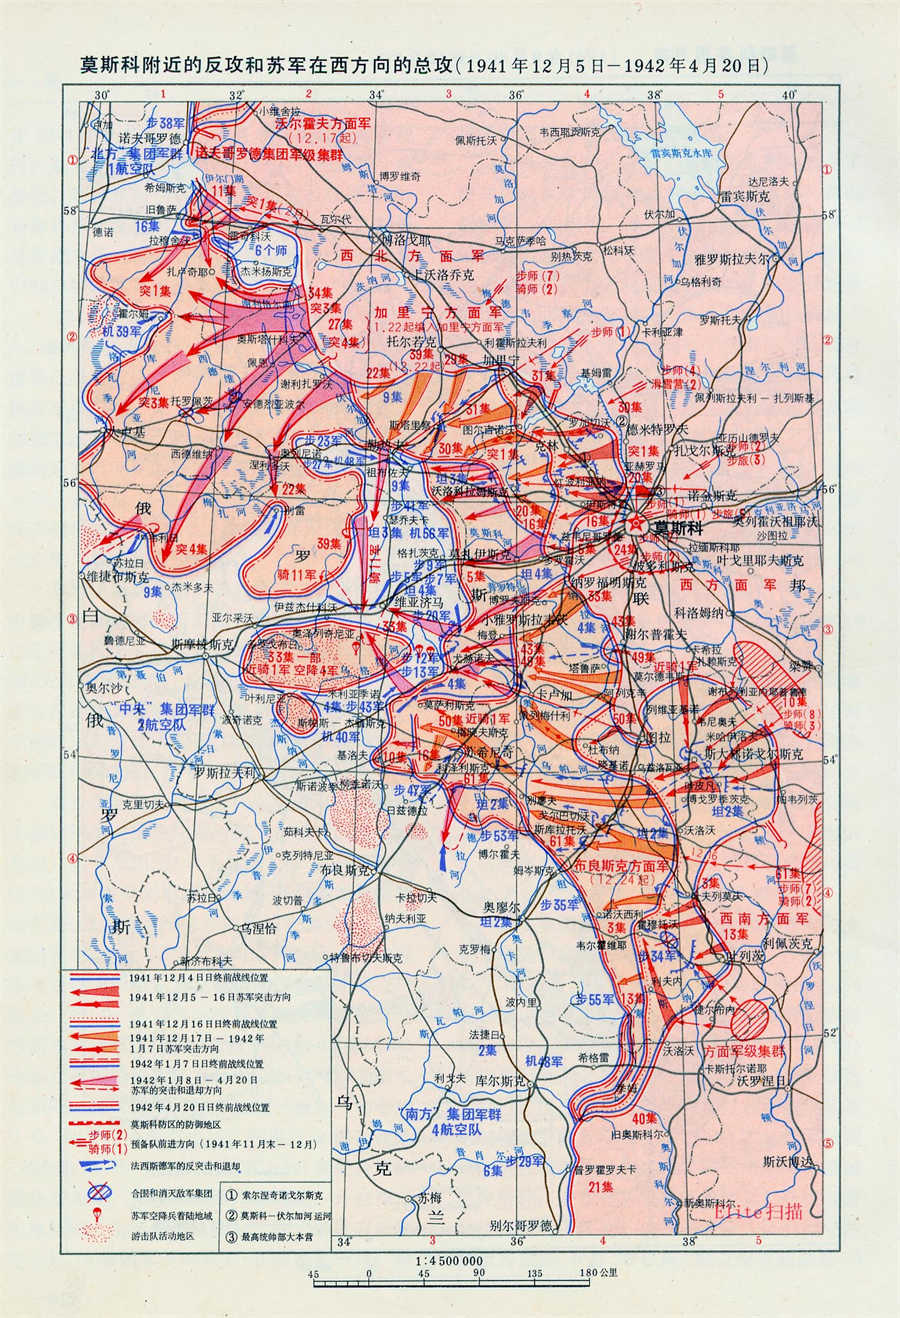 莫斯科附近的反攻与苏军在西方向的总攻